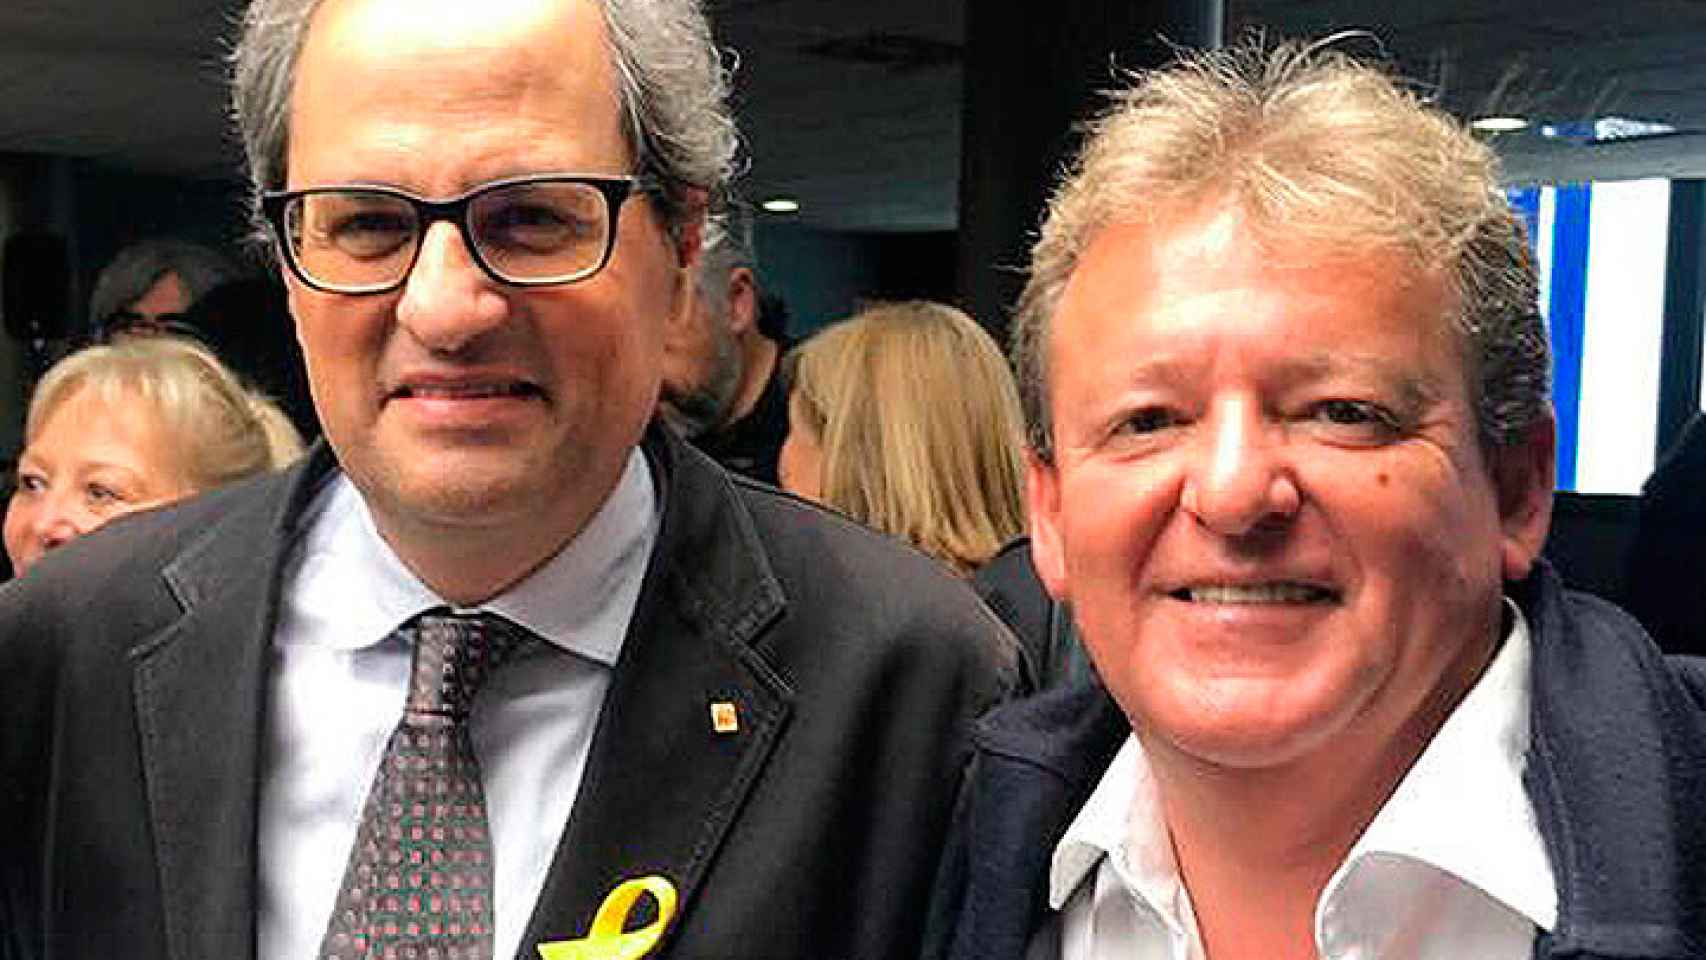 Miquel Àngel Martínez, ex alcalde de Sant Vicenç de Montalt (PDeCAT) investigado por supuesta malversación, con el presidente Quim Torra / TWITTER